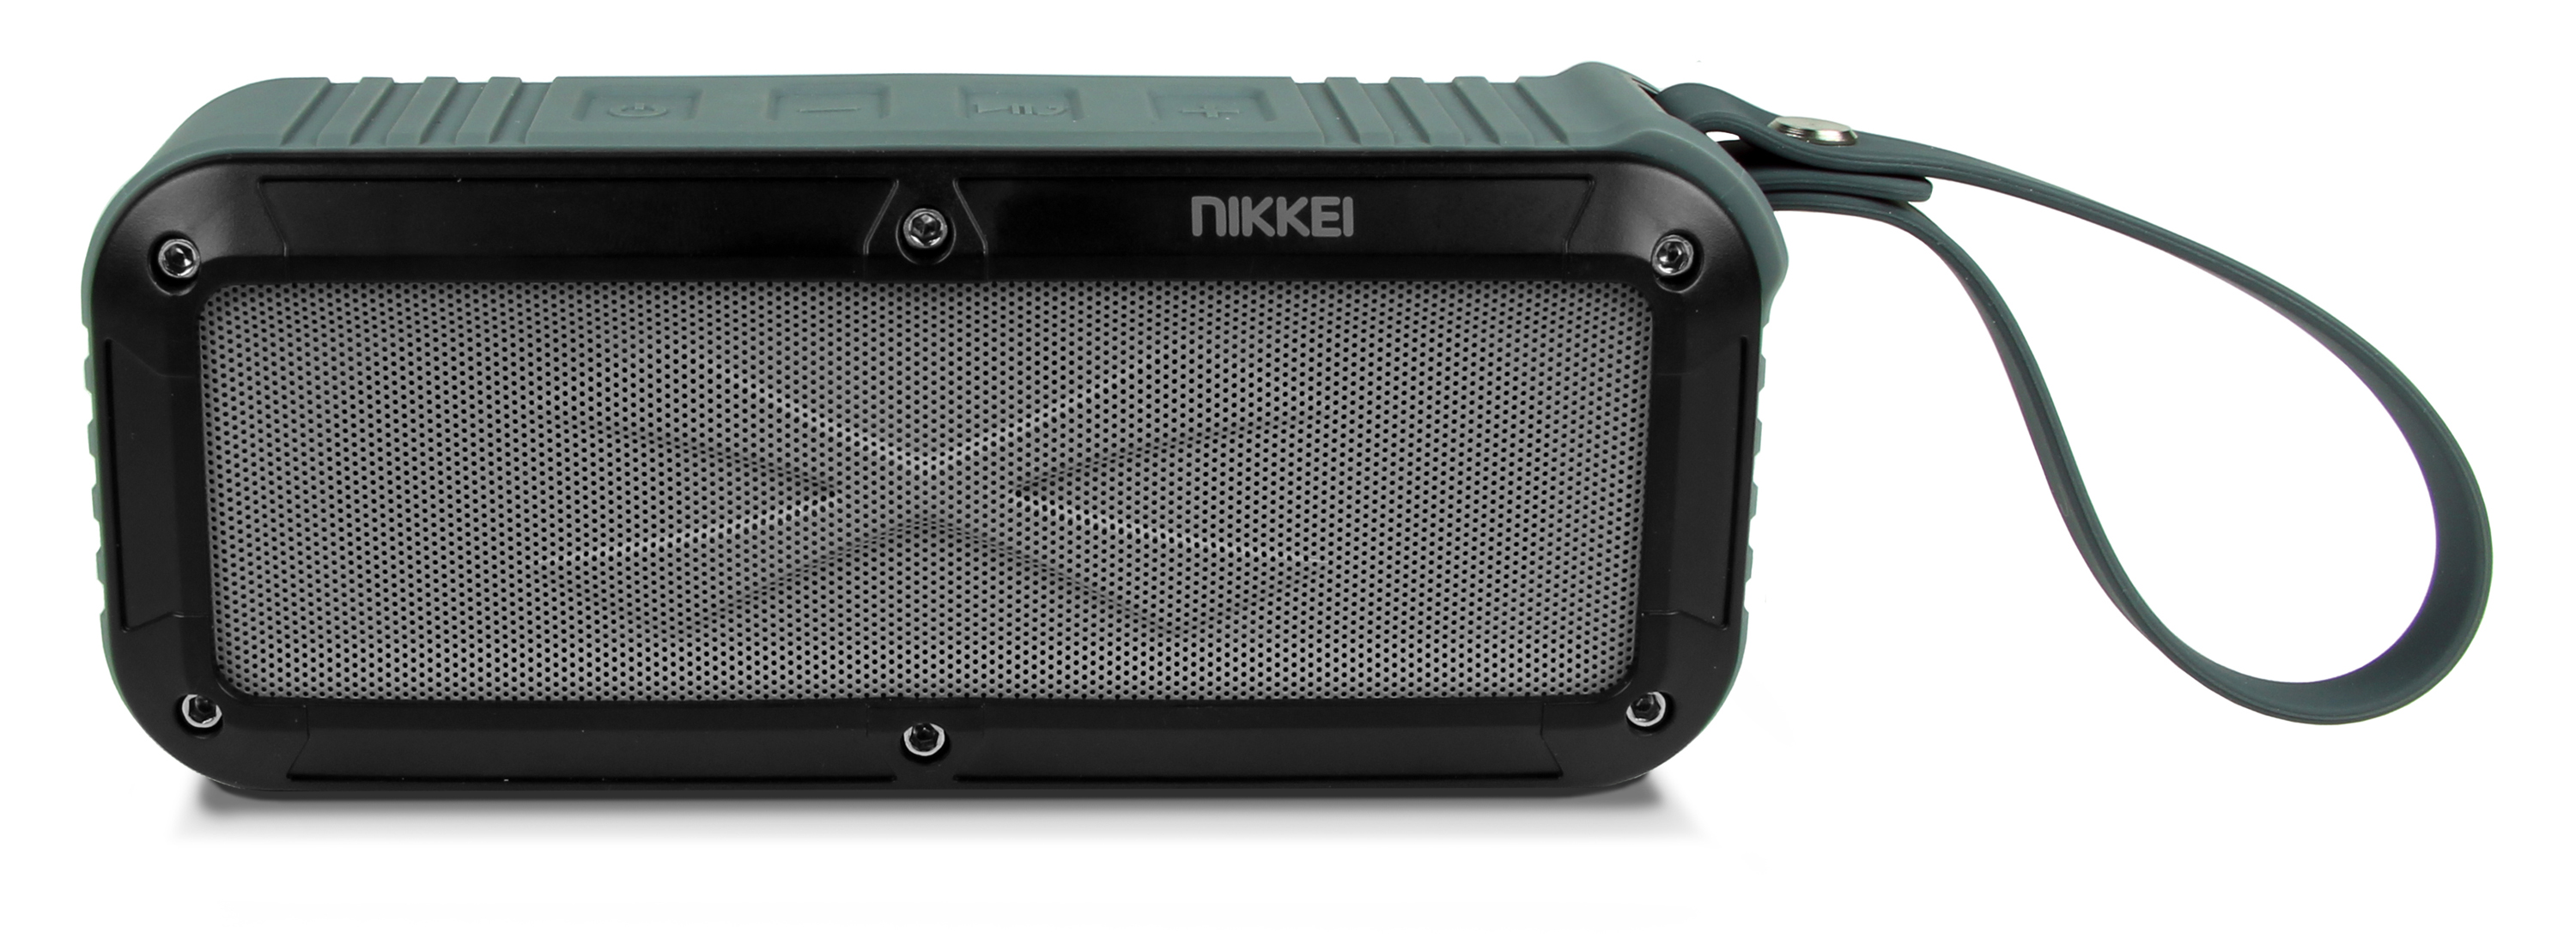 Nikkei BOXX3GY Waterproof BT Speaker  2x3W grey